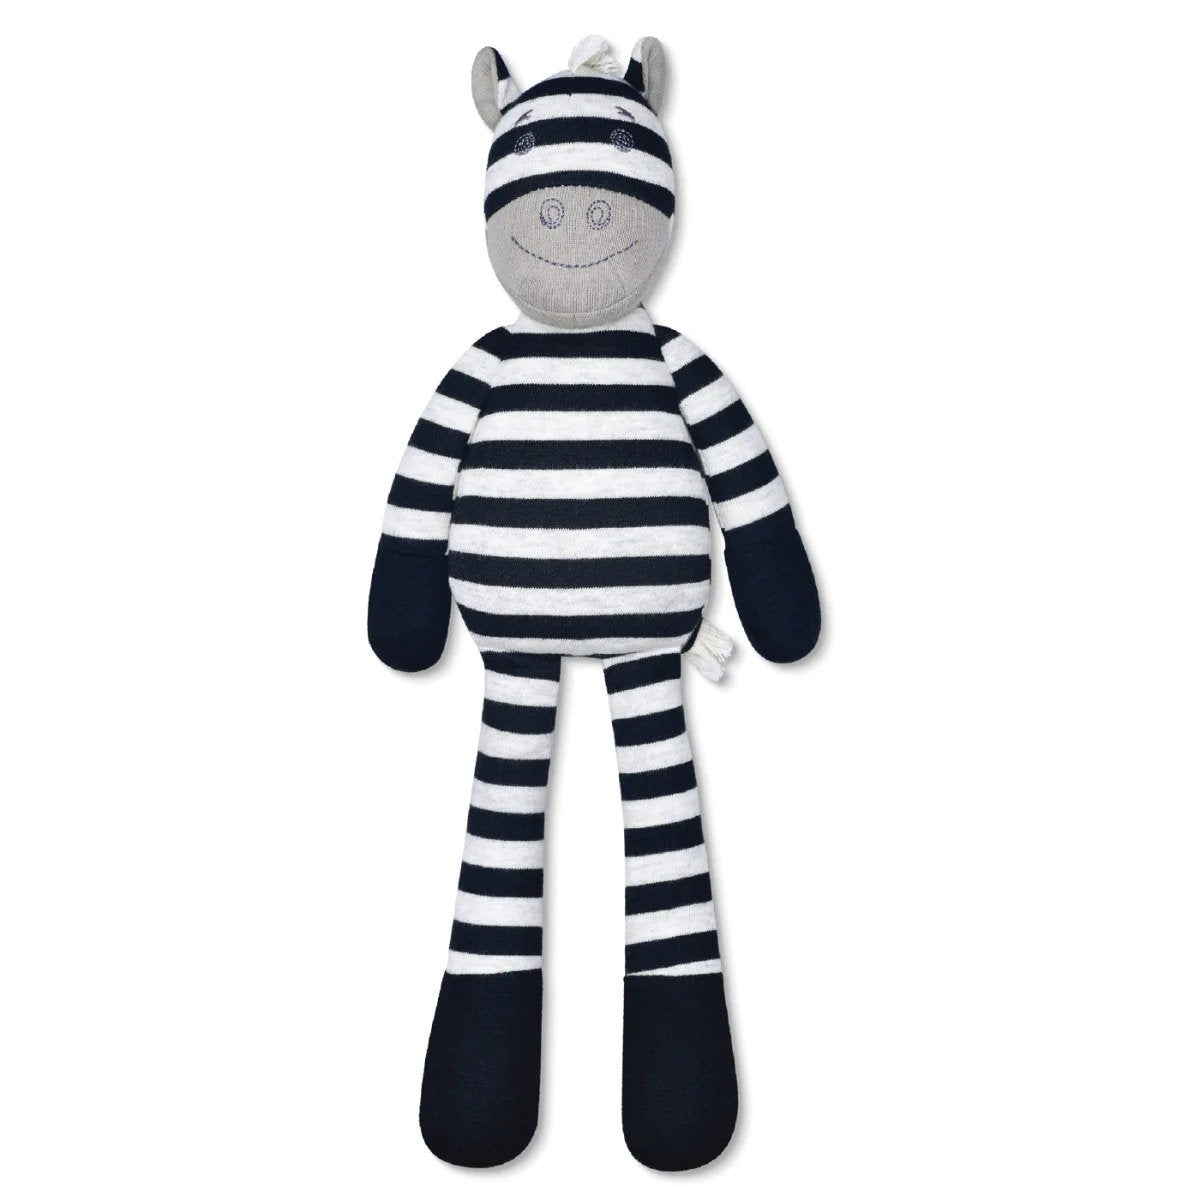 Plush Toy- Ziggy Zebra